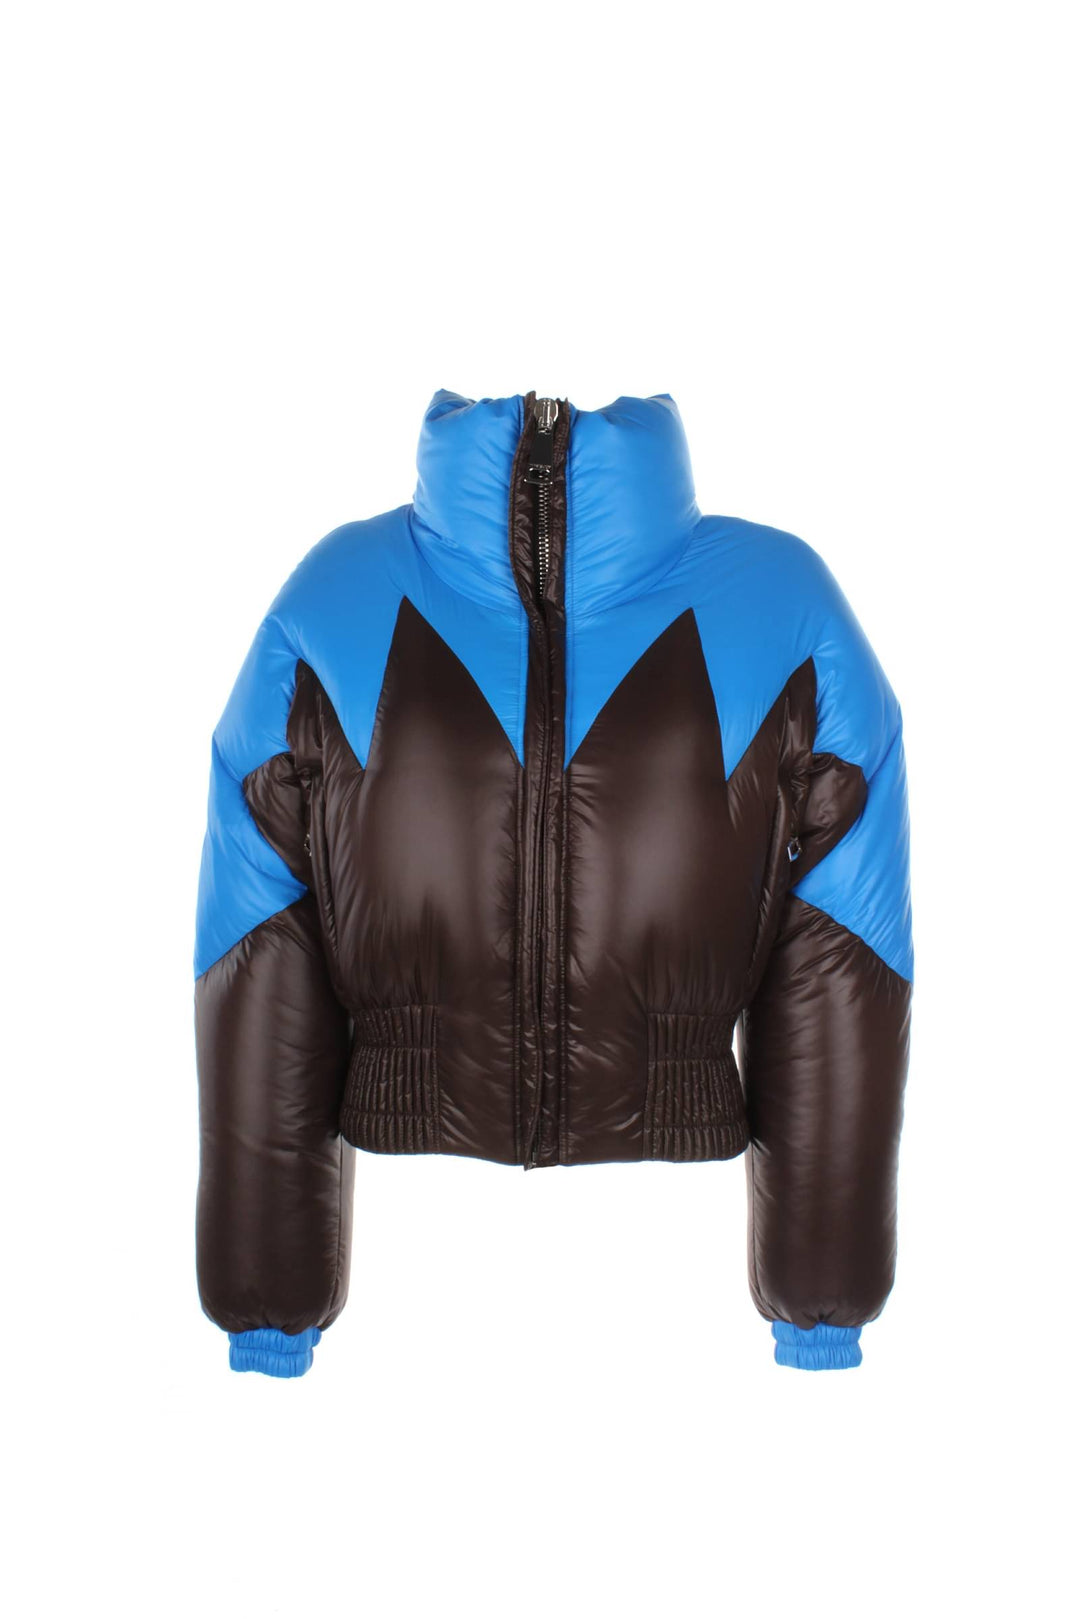 Idee Regalo Duff Peak Jacket Poliestere Blu Marrone - Khrisjoy - Donna